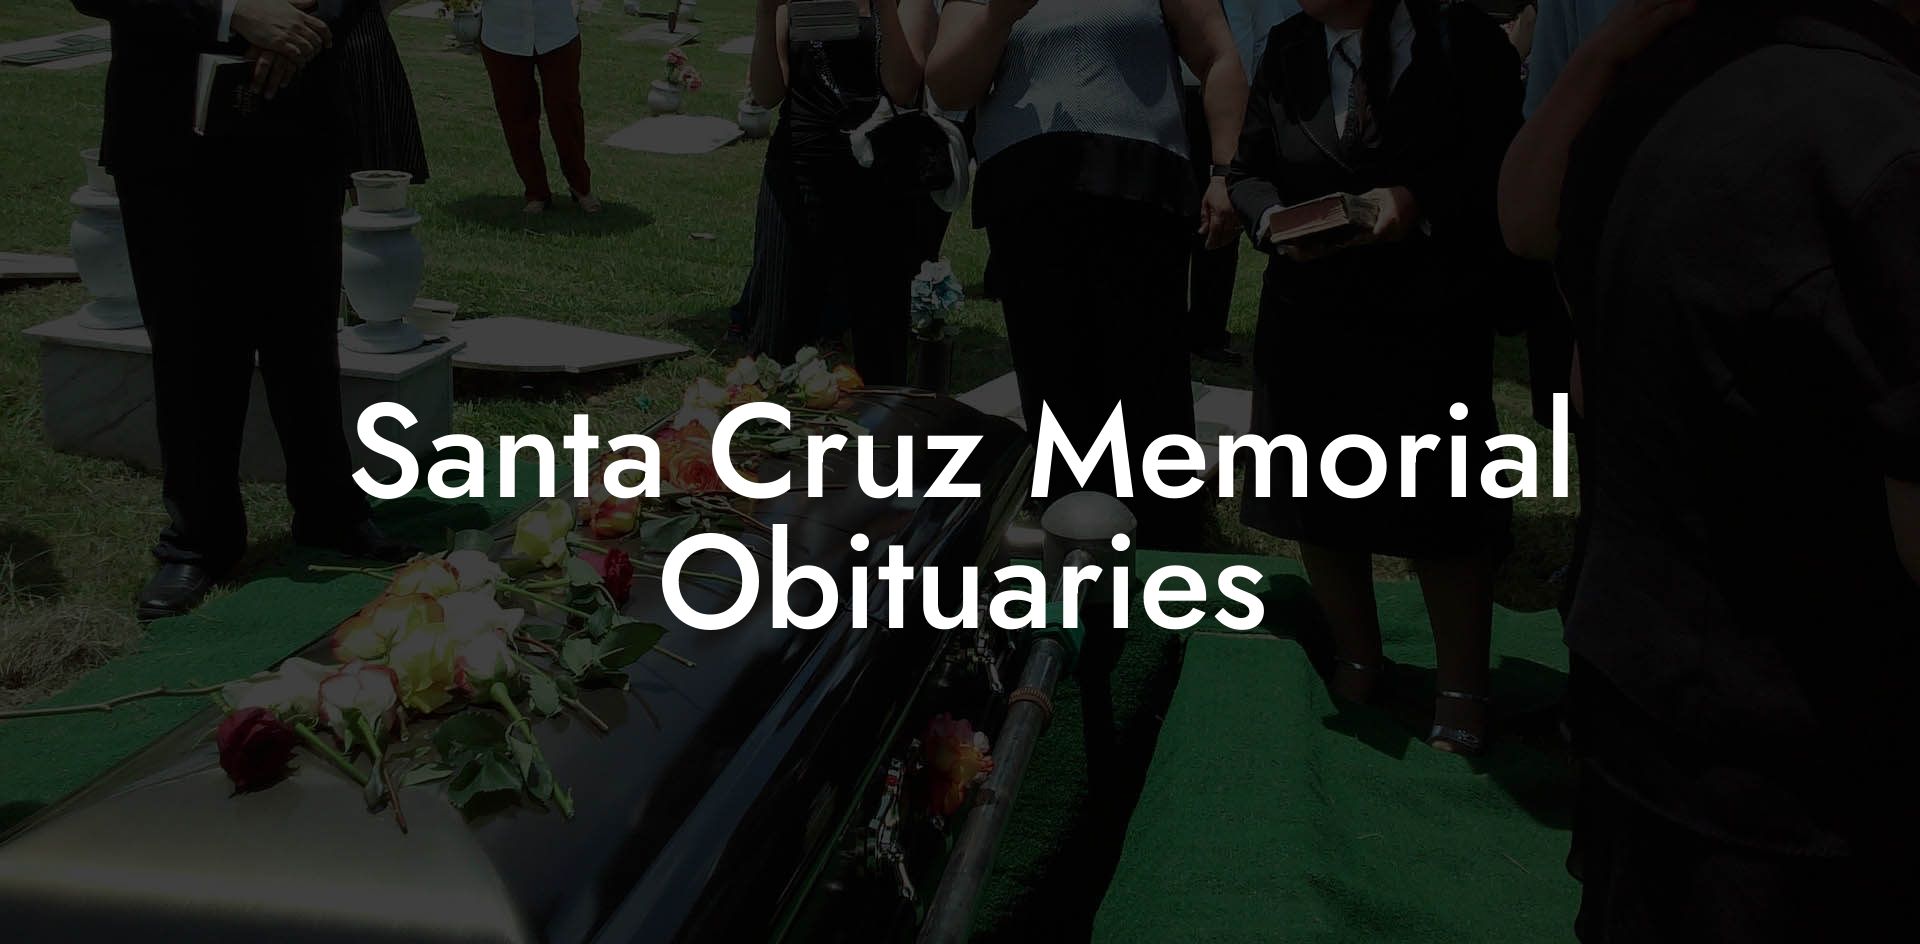 Santa Cruz Memorial Obituaries